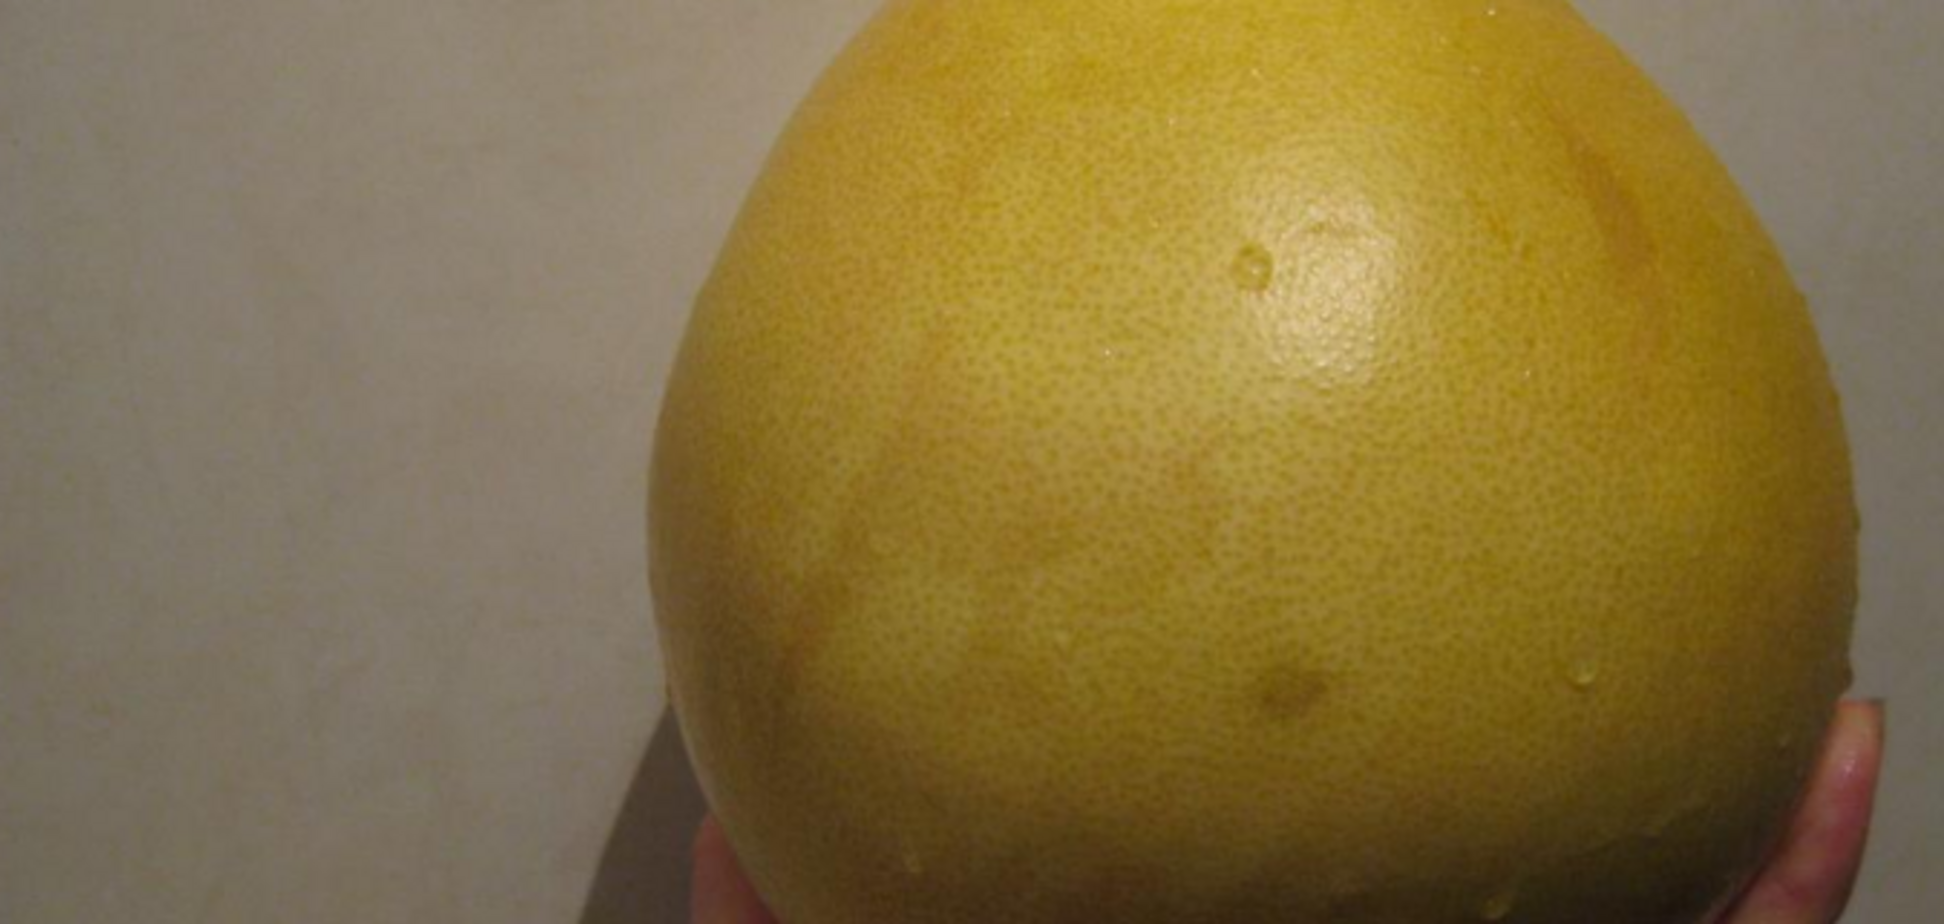 В Україну завезли фрукти з небезпечною речовиною: що про це відомо